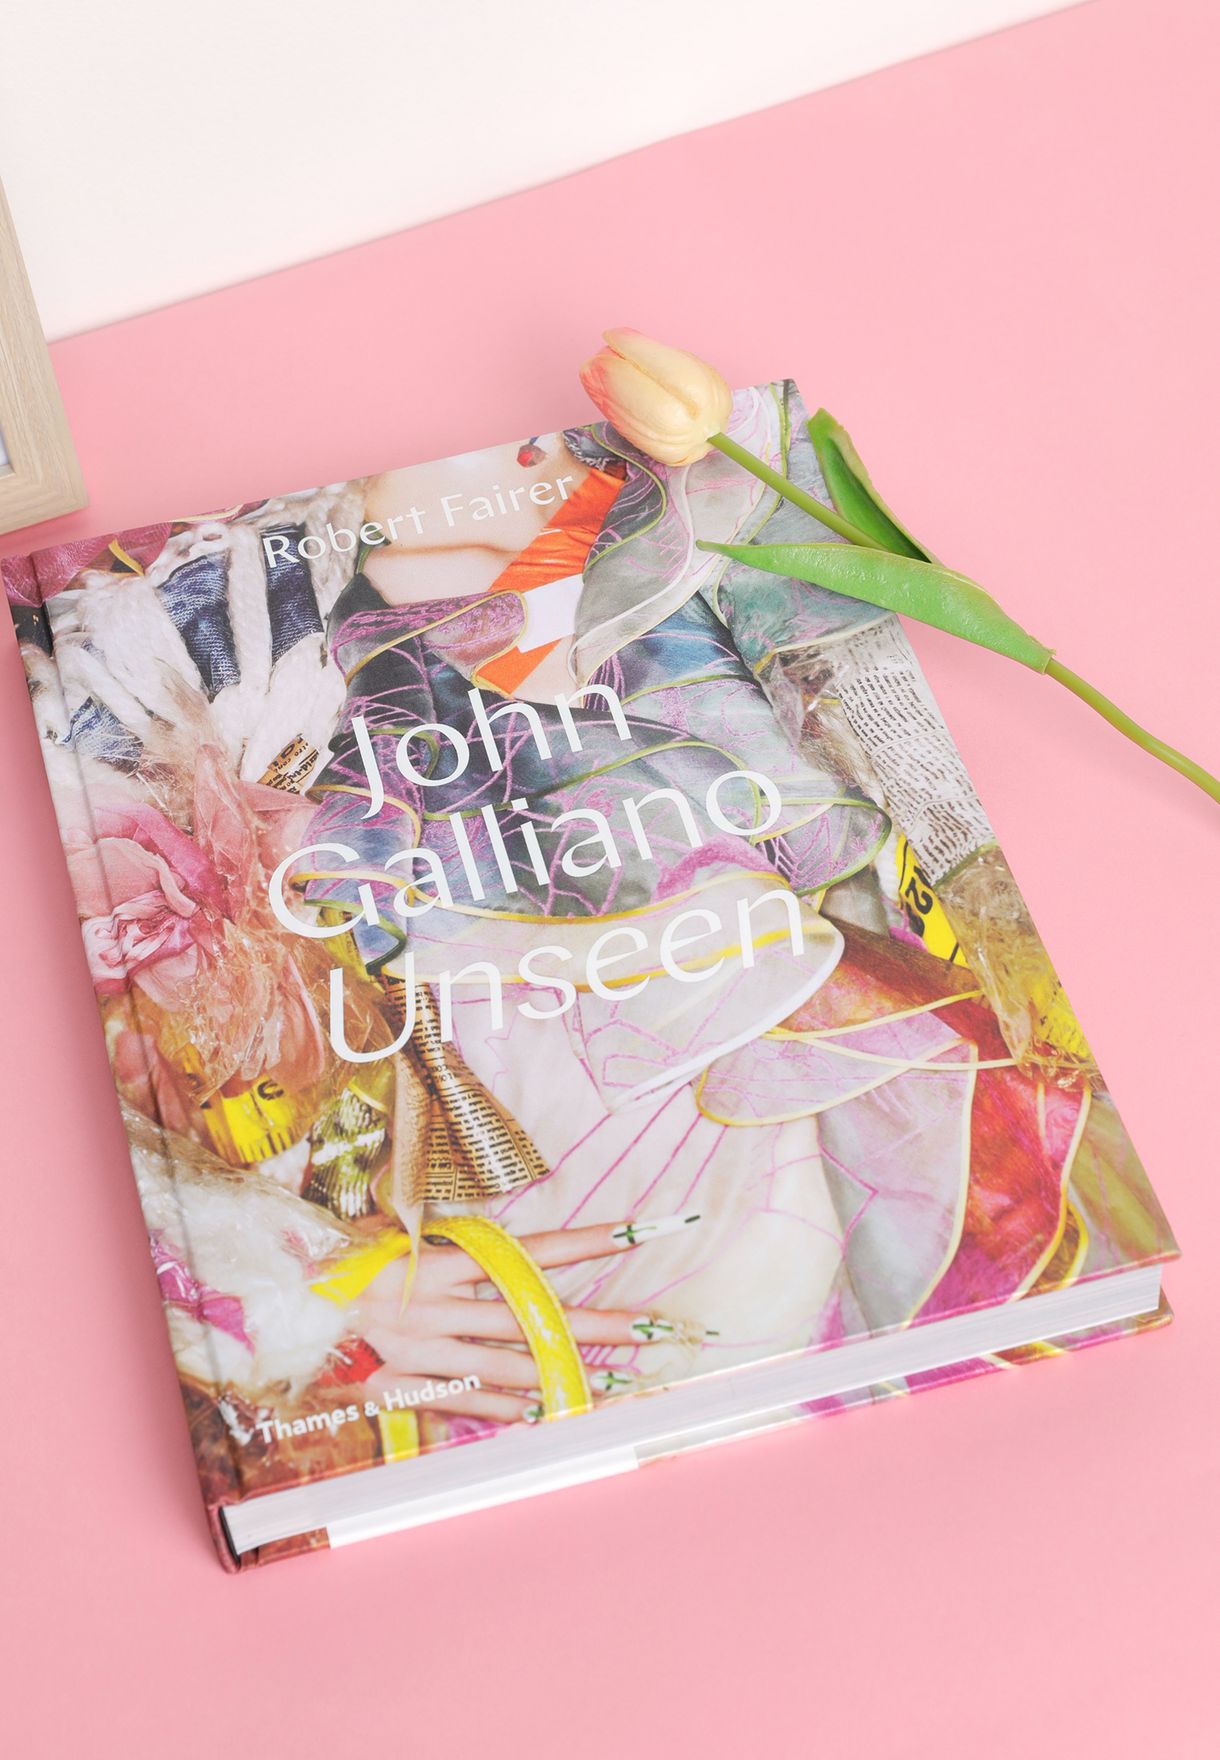 John Galliano: Unseen